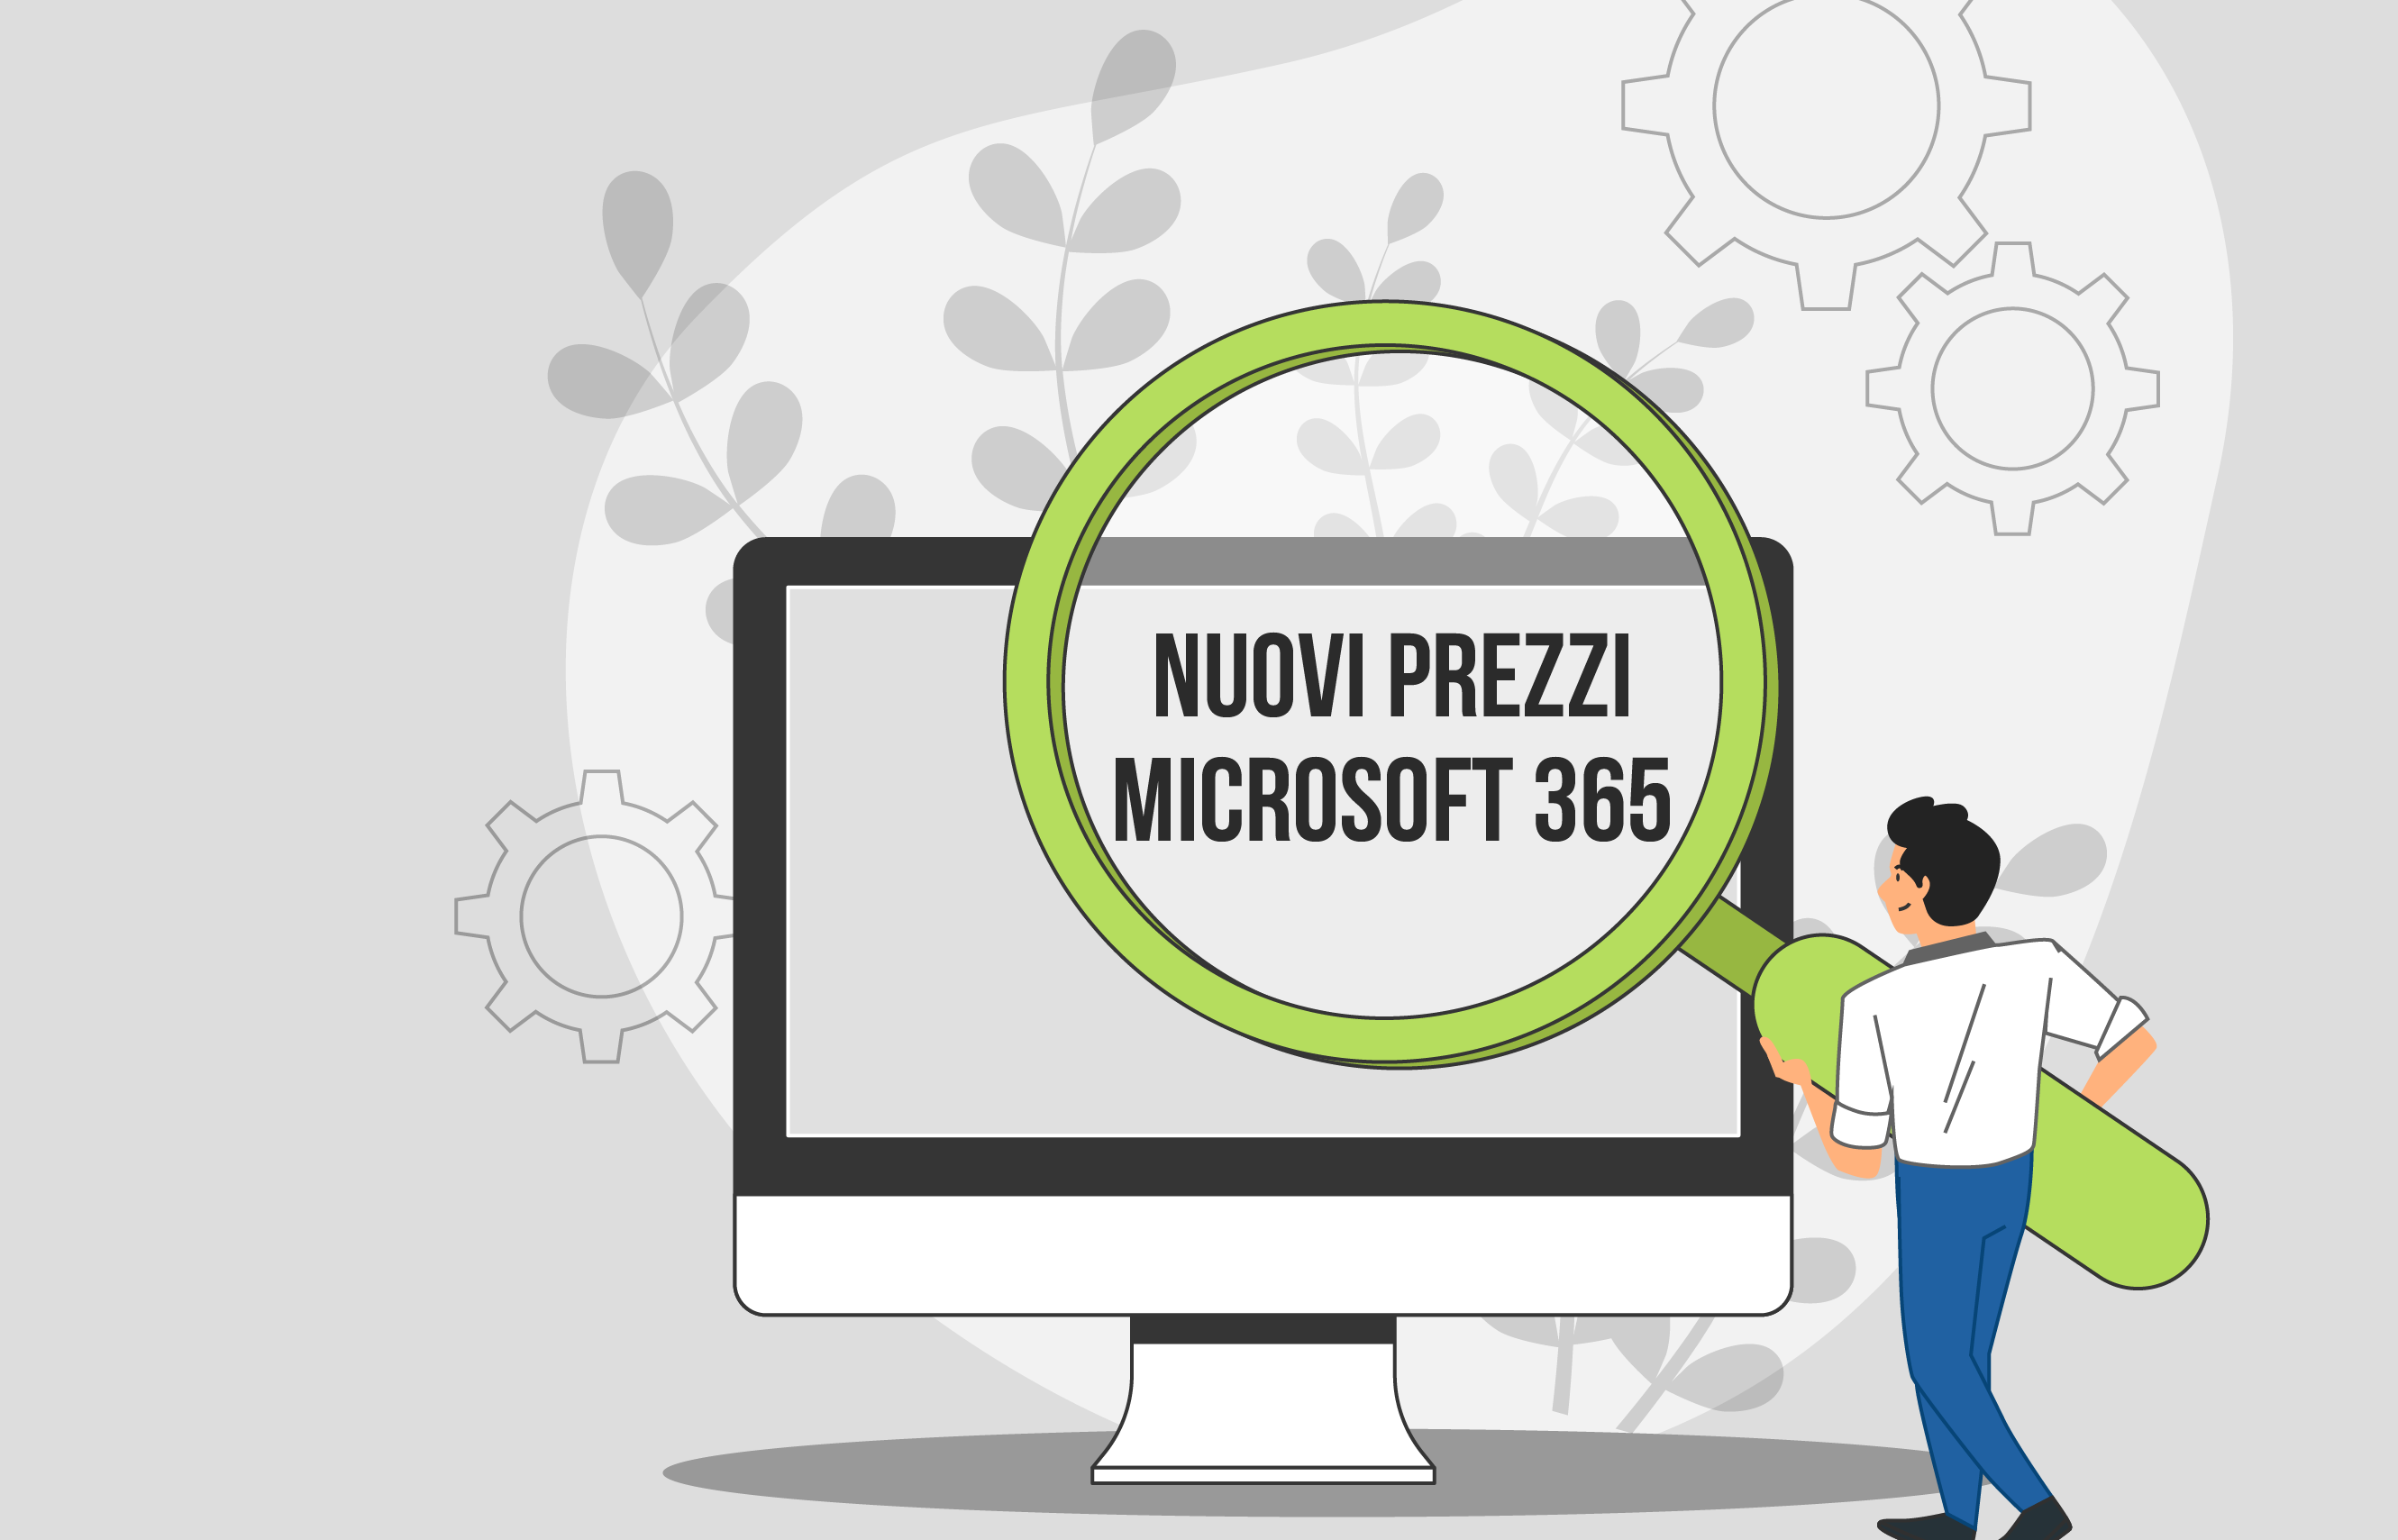 Nuovi prezzi Microsoft 365: cosa cambia e cosa no!